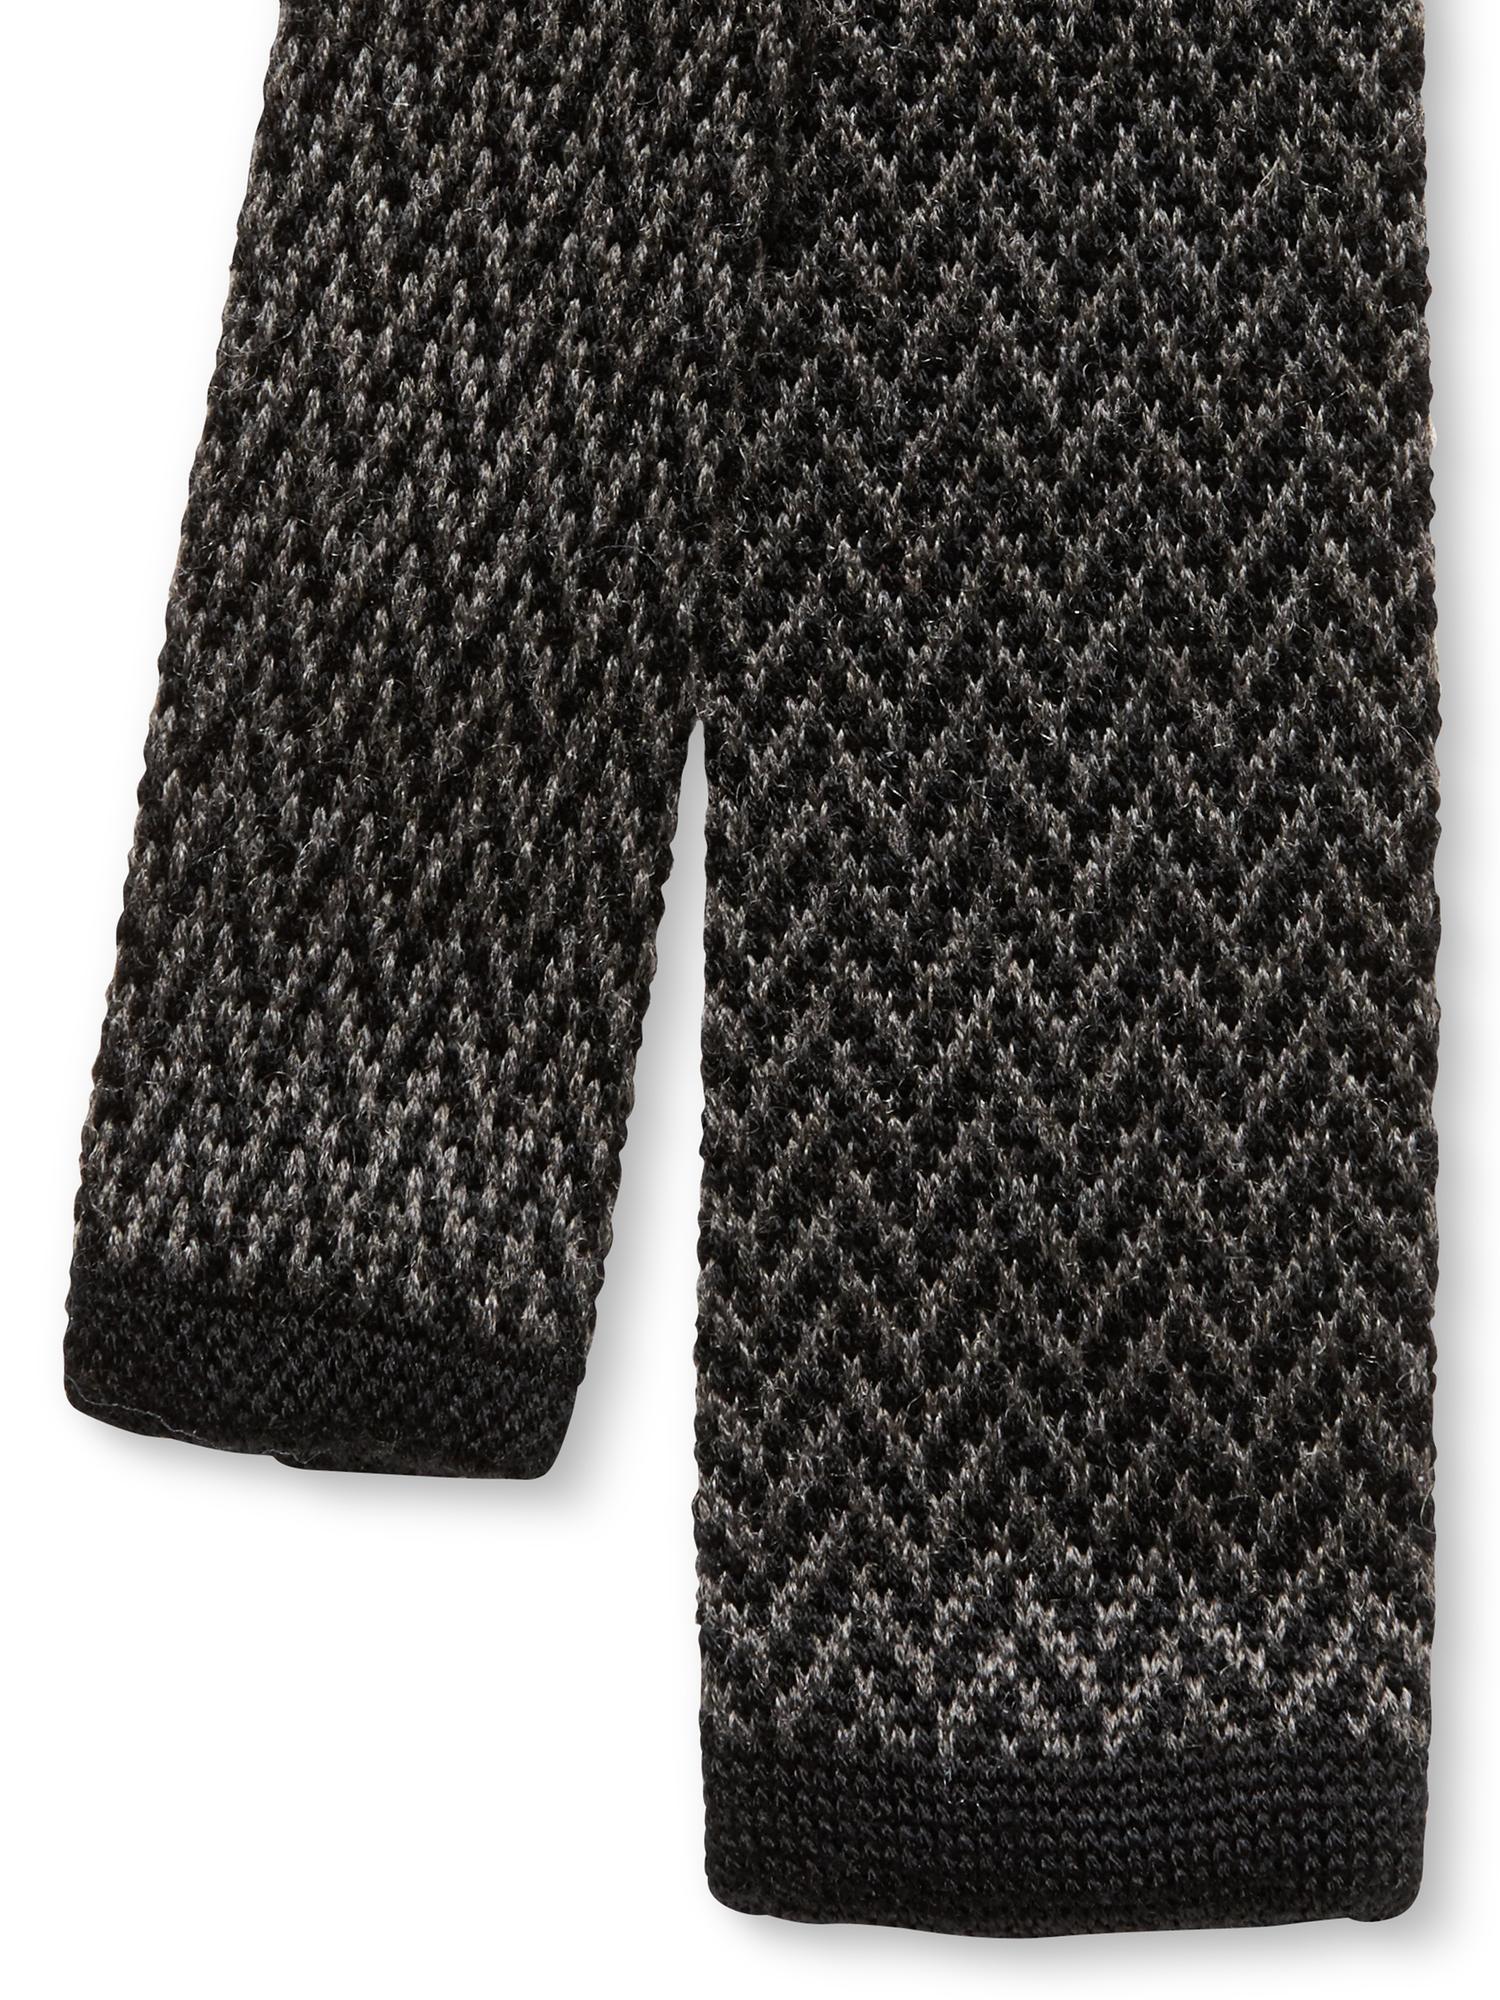 Chevron Knit Skinny Tie